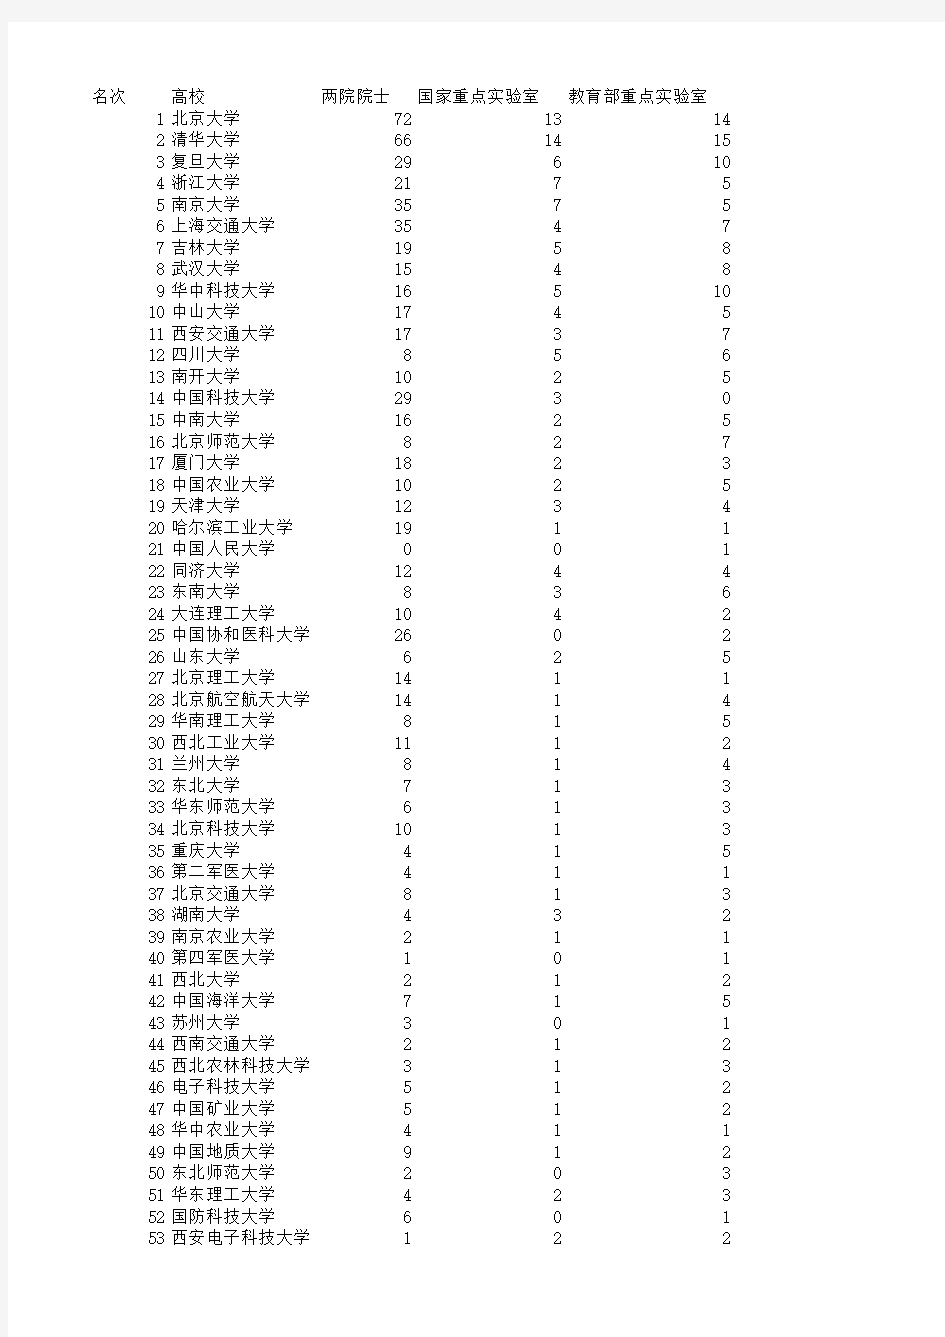 中国有博士点的大学排行榜